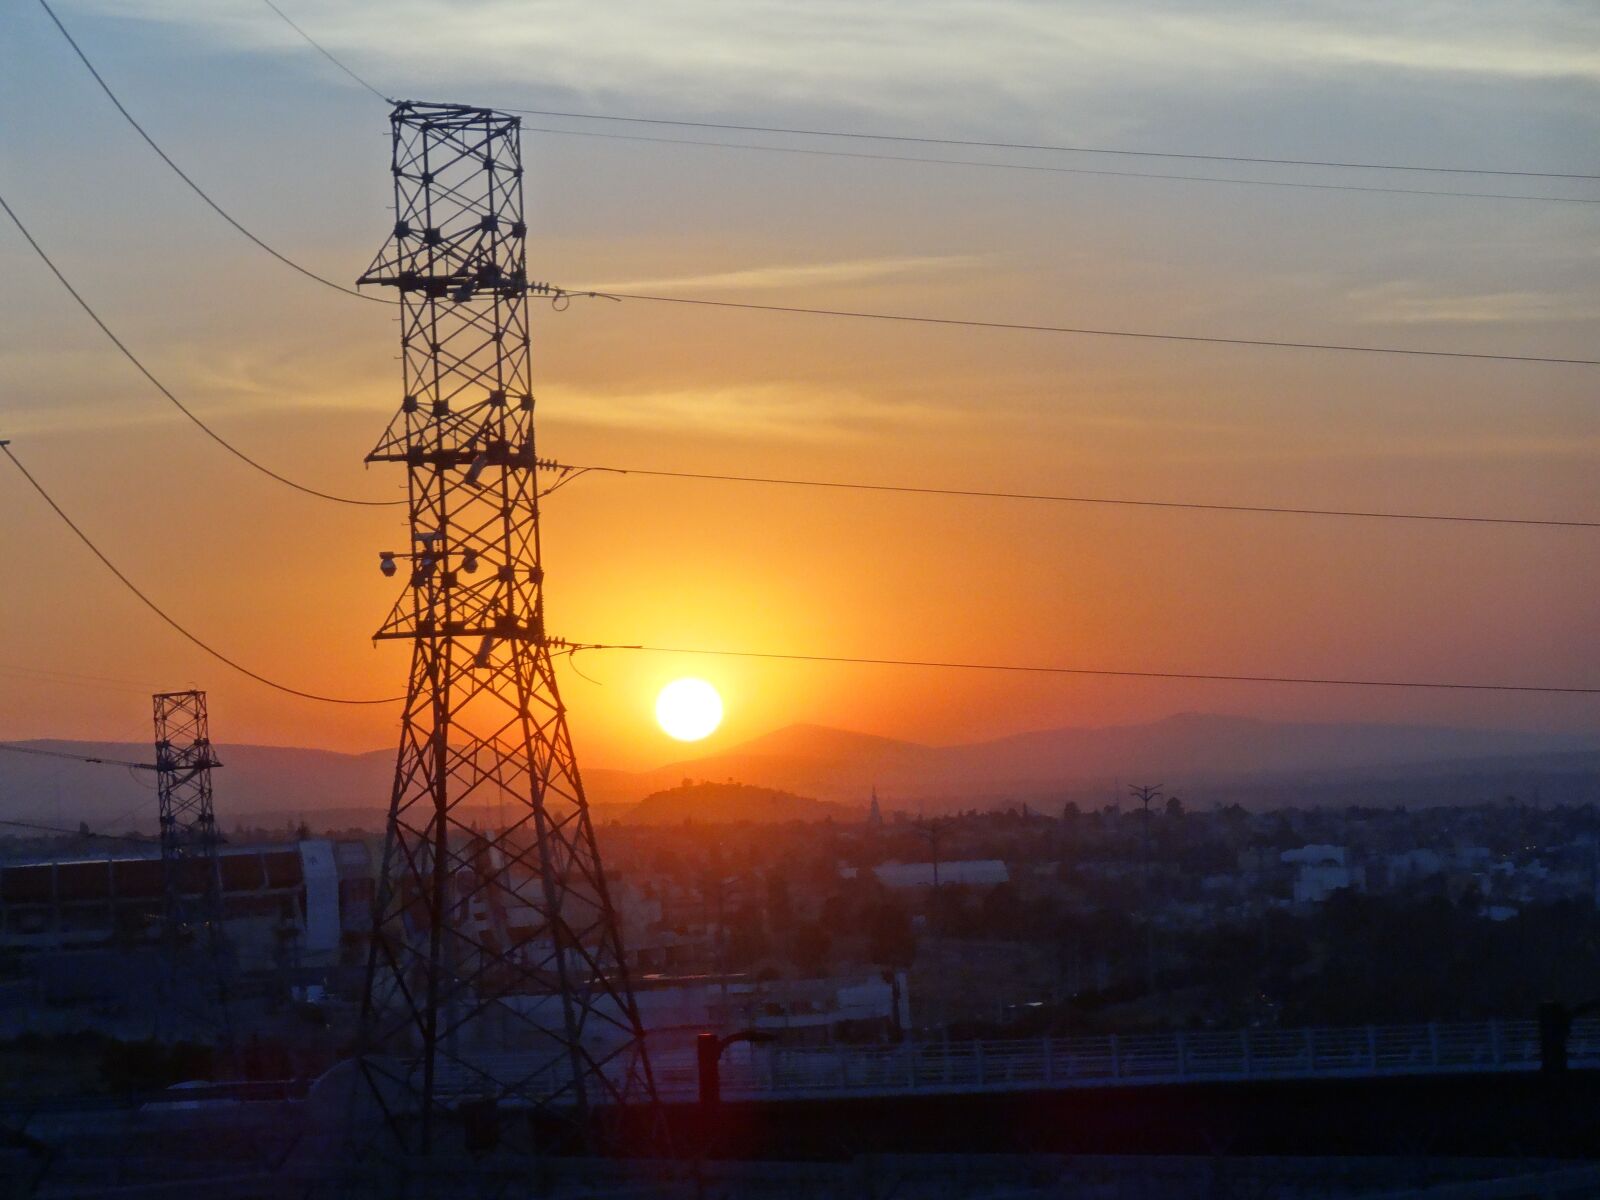 Sony Cyber-shot DSC-HX30V sample photo. Sunset, electricity, sun photography